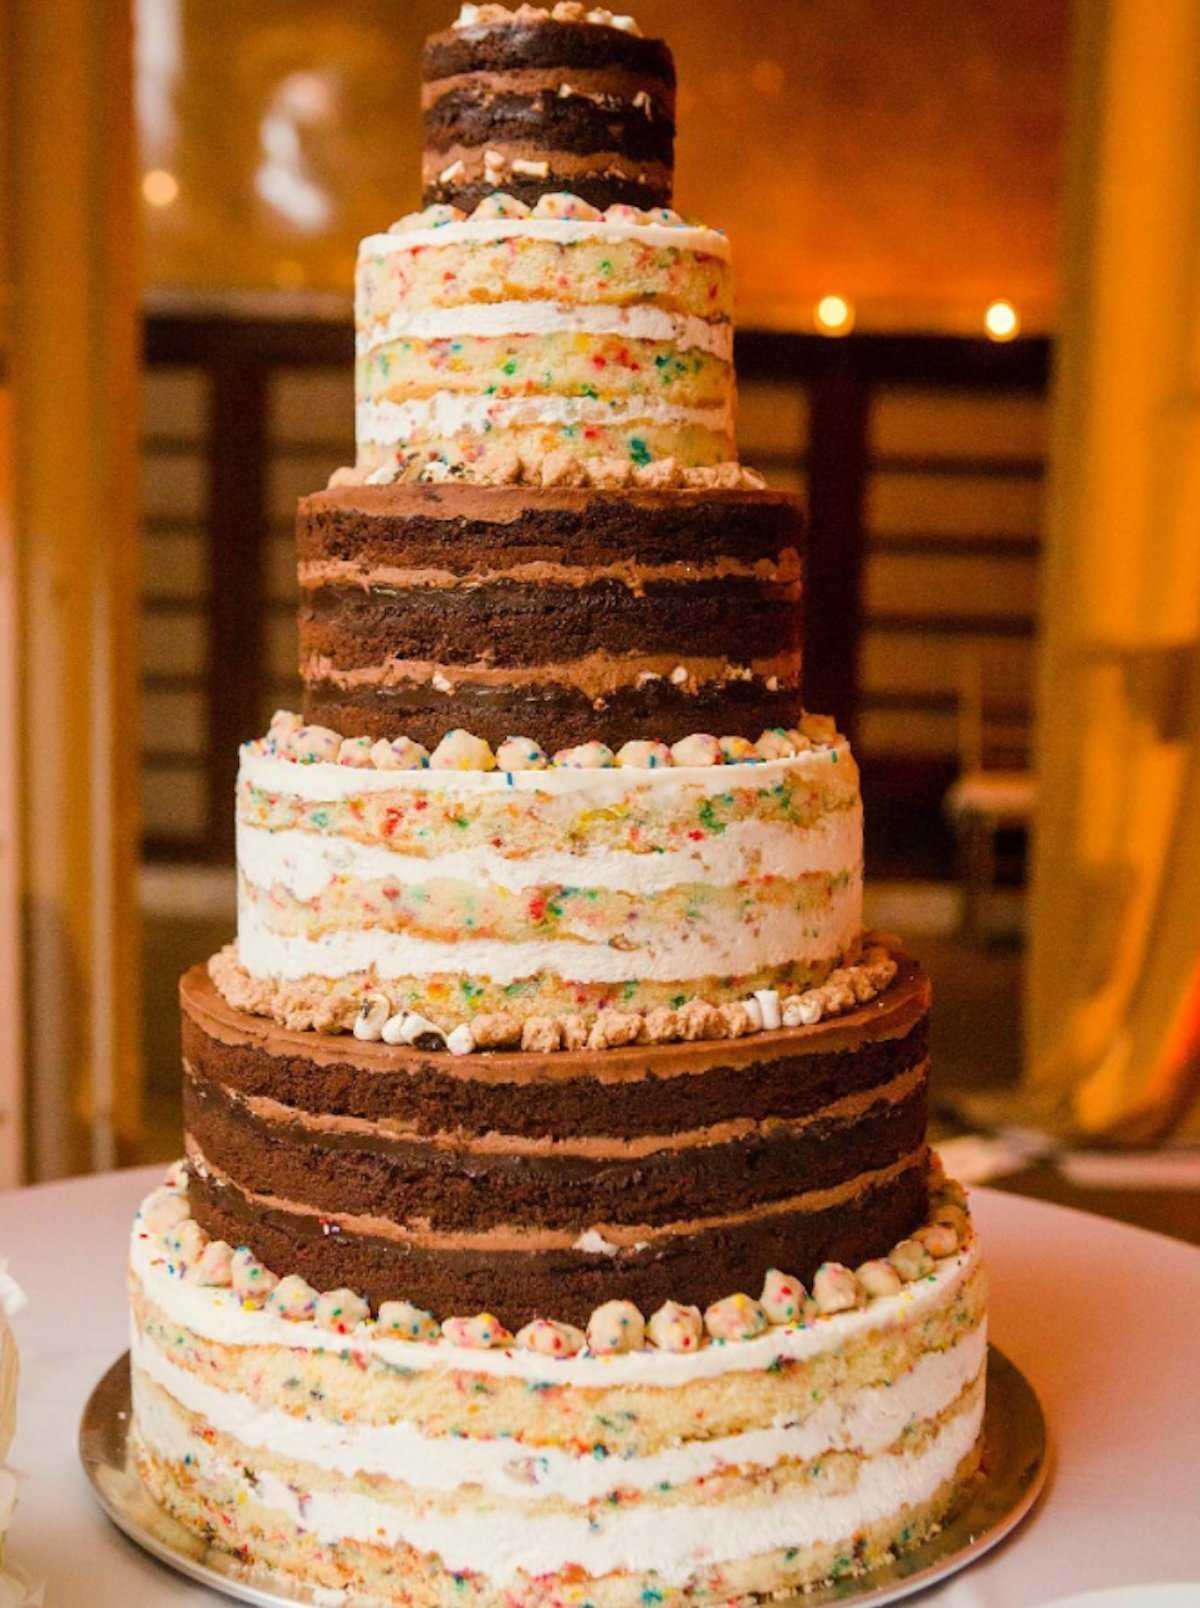 Правильный выбор начинки для свадебного торта — вопрос довольно важный, так как необходимо руководствоваться не только предпочтениями молодоженов, но и учитывать вкус гостей Какую выбрать начинку для торта на свадьбу